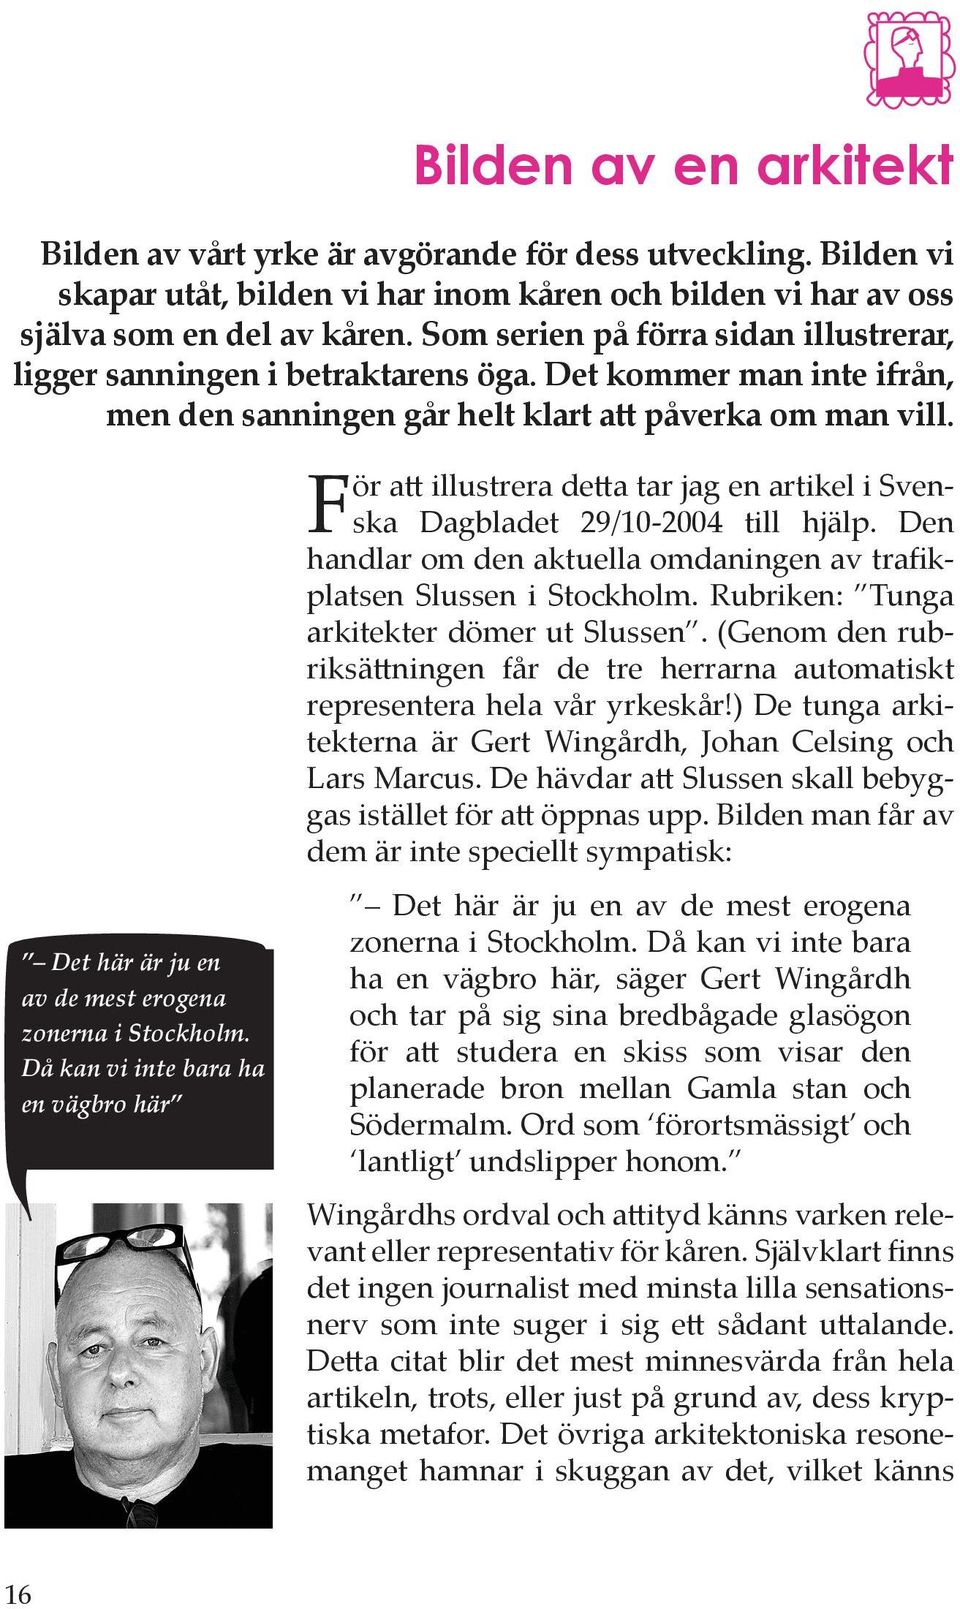 För att illustrera detta tar jag en artikel i Svenska Dagbladet 29/10-2004 till hjälp. Den handlar om den aktuella omdaningen av trafikplatsen Slussen i Stockholm.